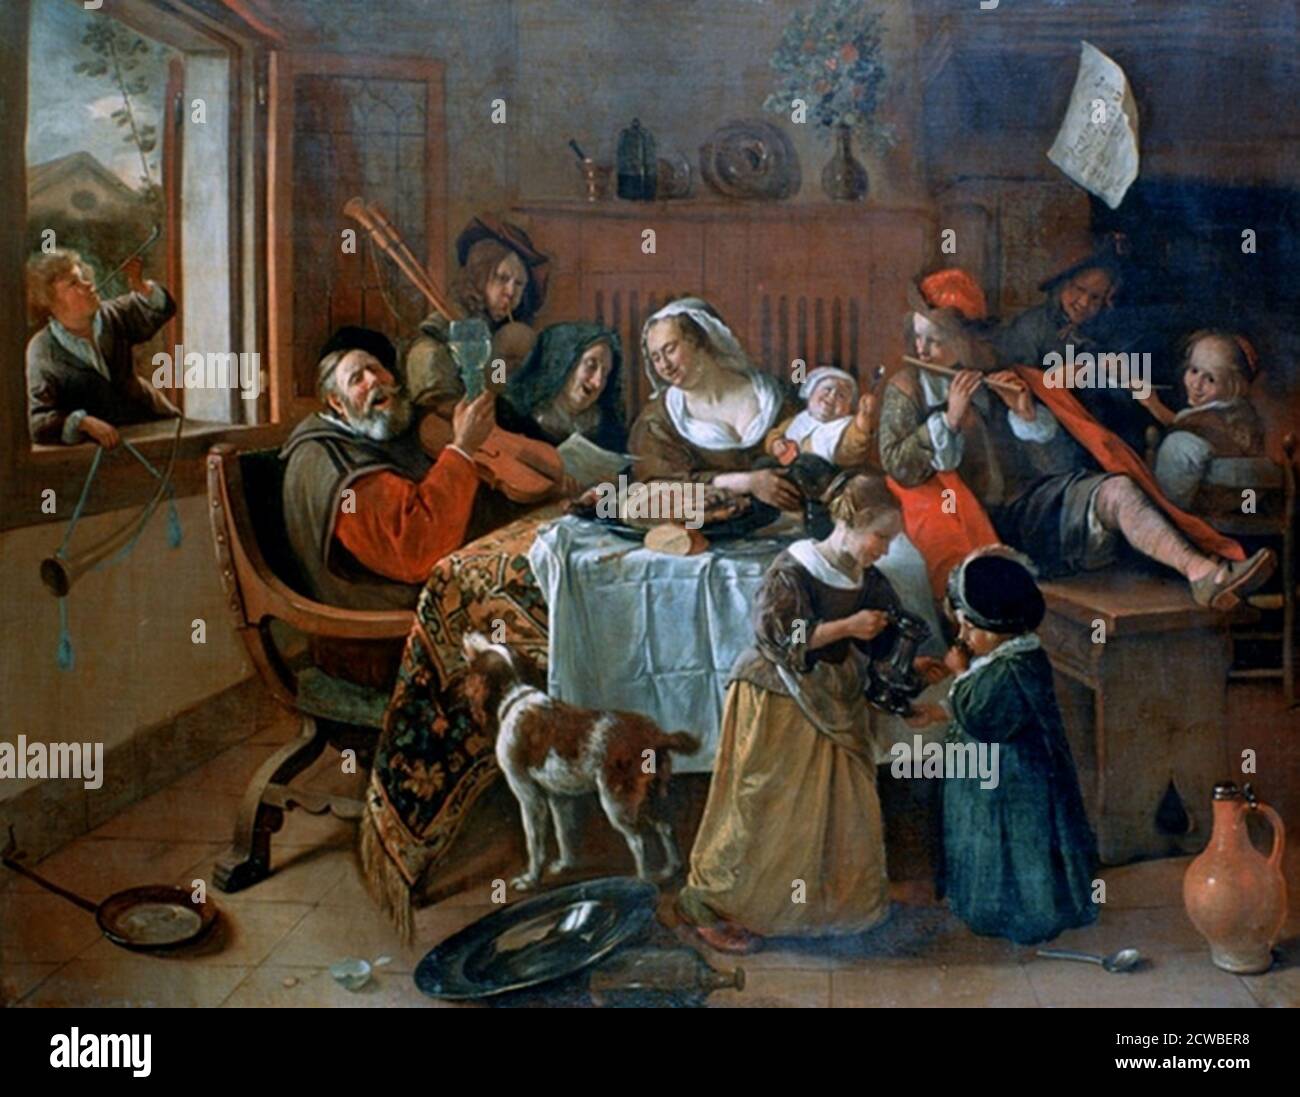 Die Fröhliche Familie", 1668. Künstler: Jan Steen. Jan Havickszoon Steen (1626-1679) war ein niederländischer Maler des Goldenen Zeitalters, einer der führenden Genremaler des 17. Jahrhunderts. Stockfoto